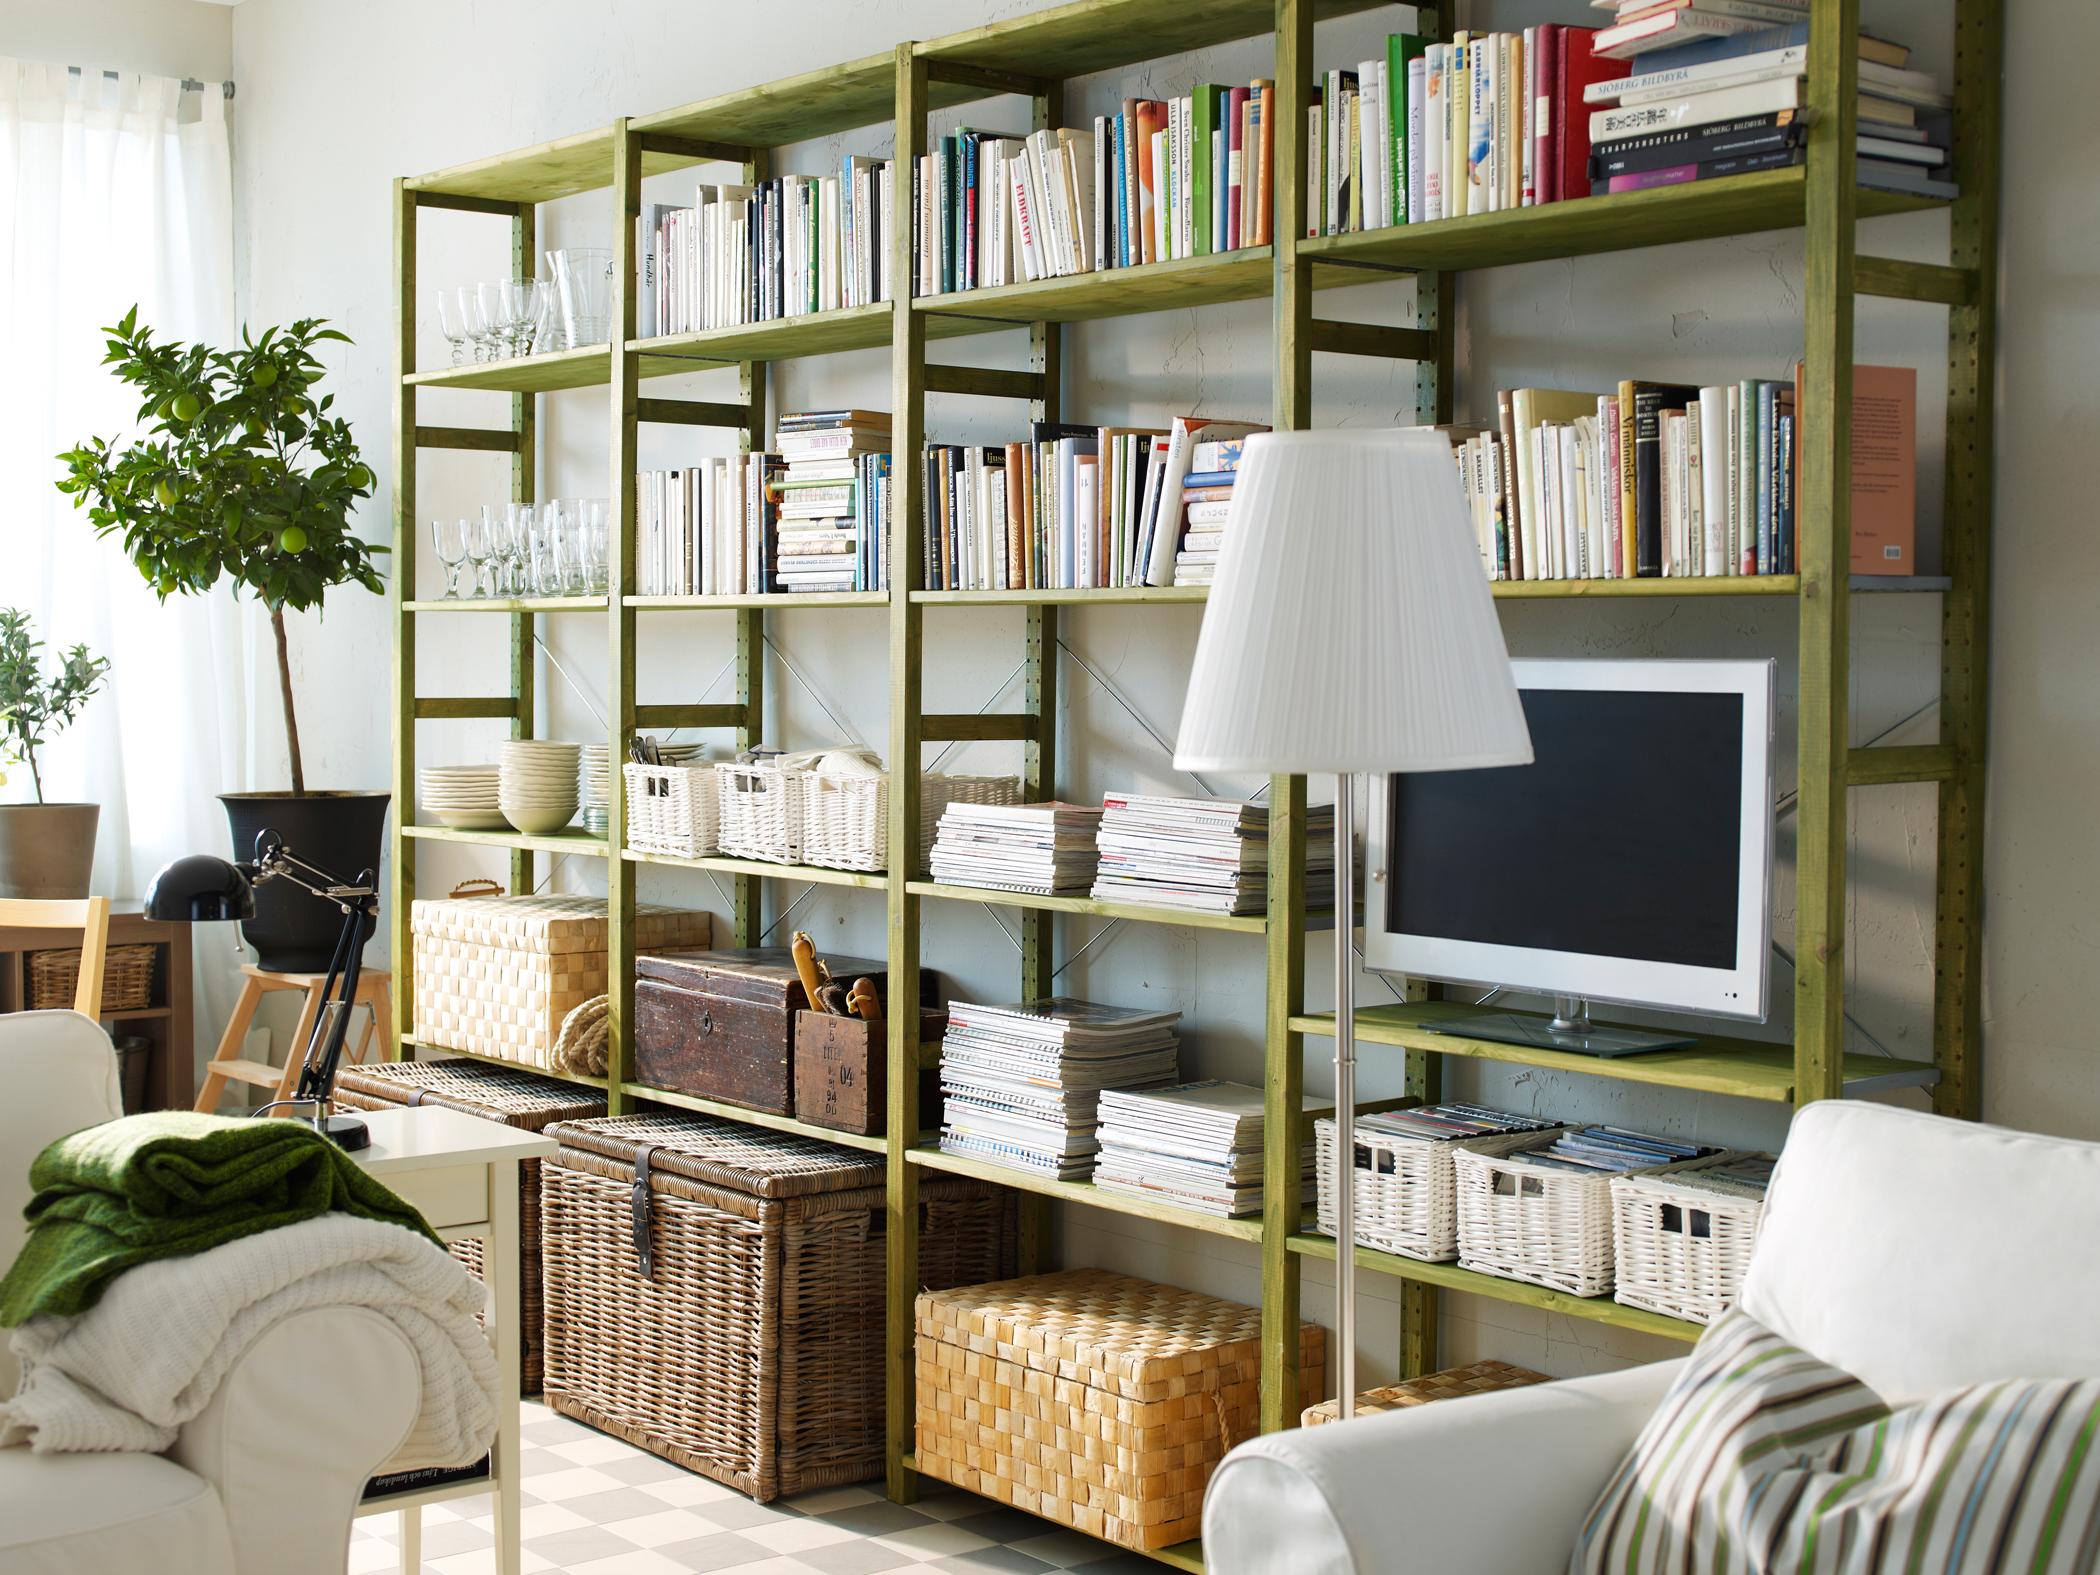 Grünes Regalsystem im Wohnzimmer #wohnzimmer #regalsystem #ikea #regalwand #ikearegal #wohnwand ©Inter IKEA Systems B.V.